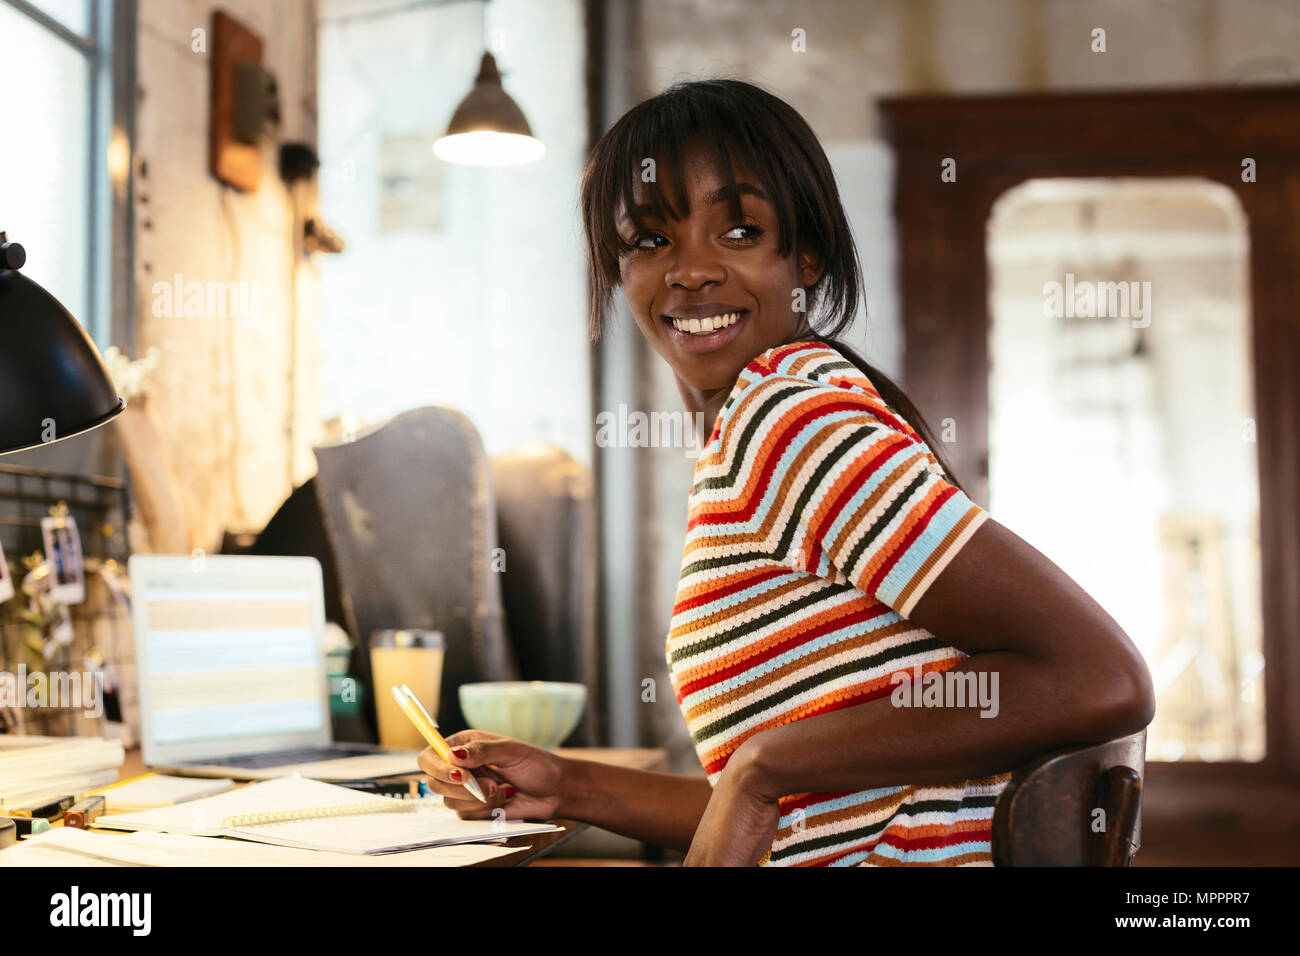 Portrait of smiling young woman sitting at desk dans un loft Banque D'Images